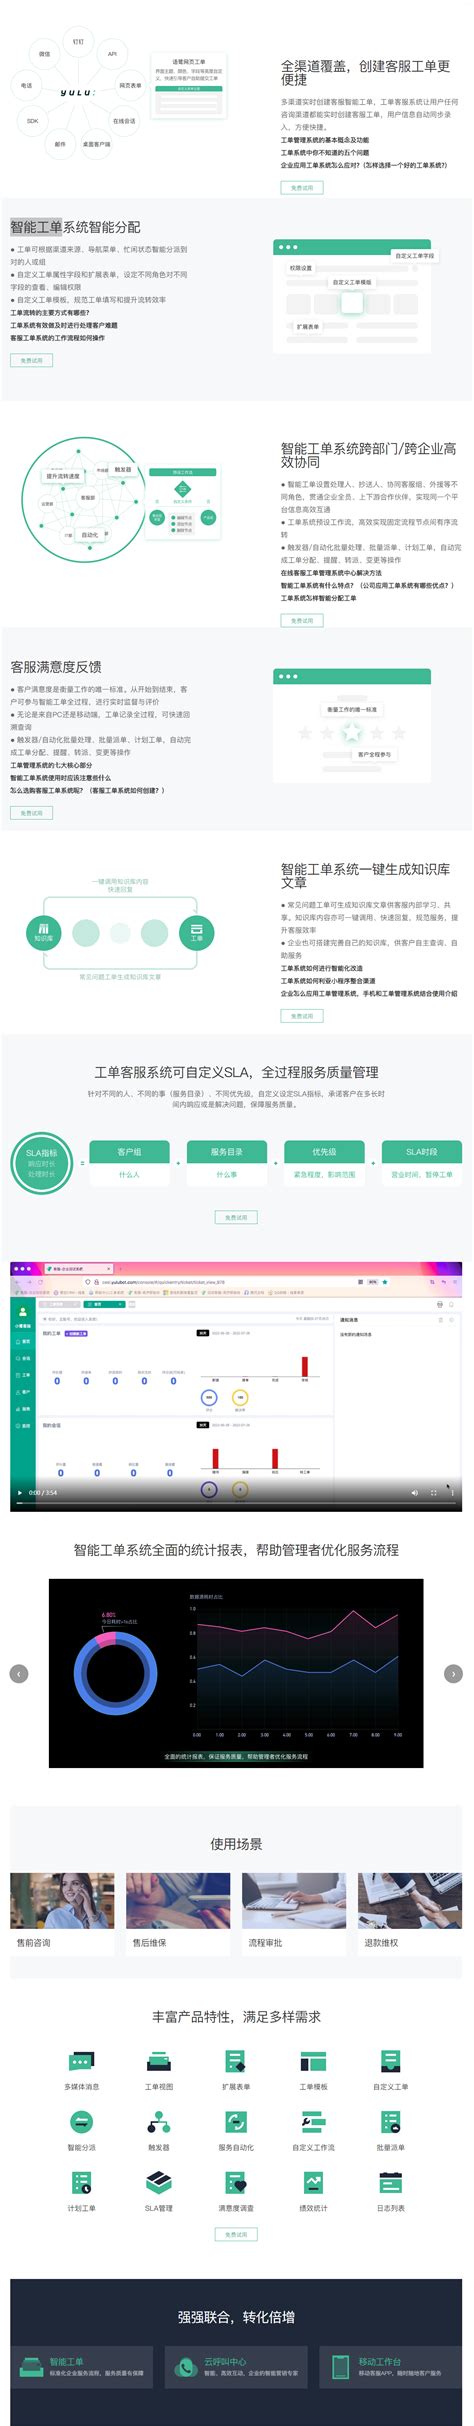 联系方式-上海昌鹭智能技术有限公司